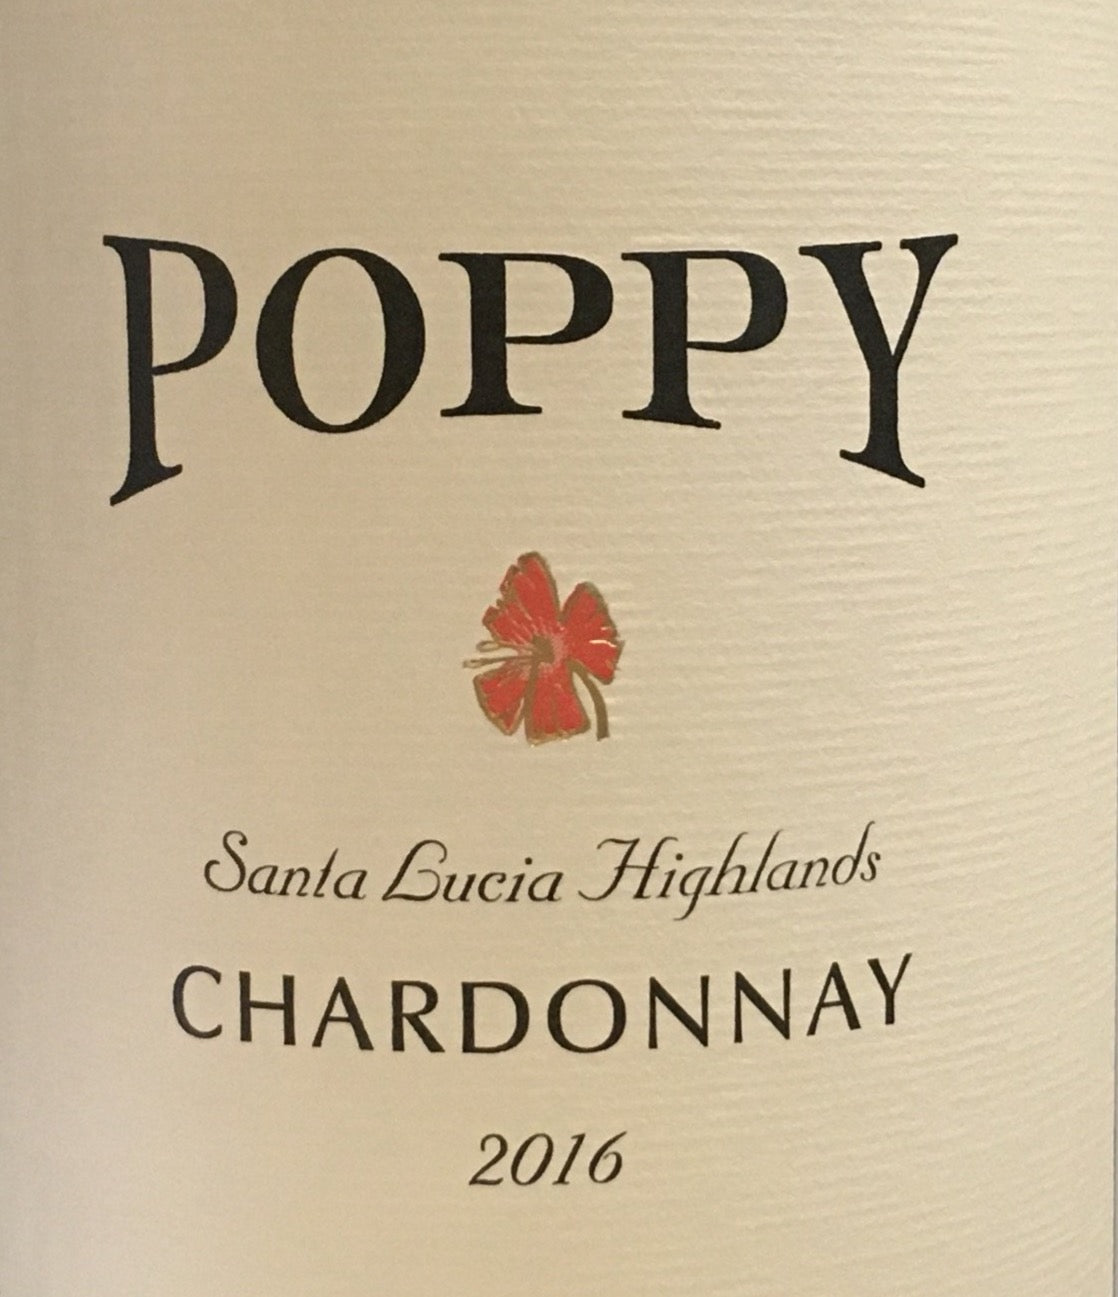 Poppy - Chardonnay